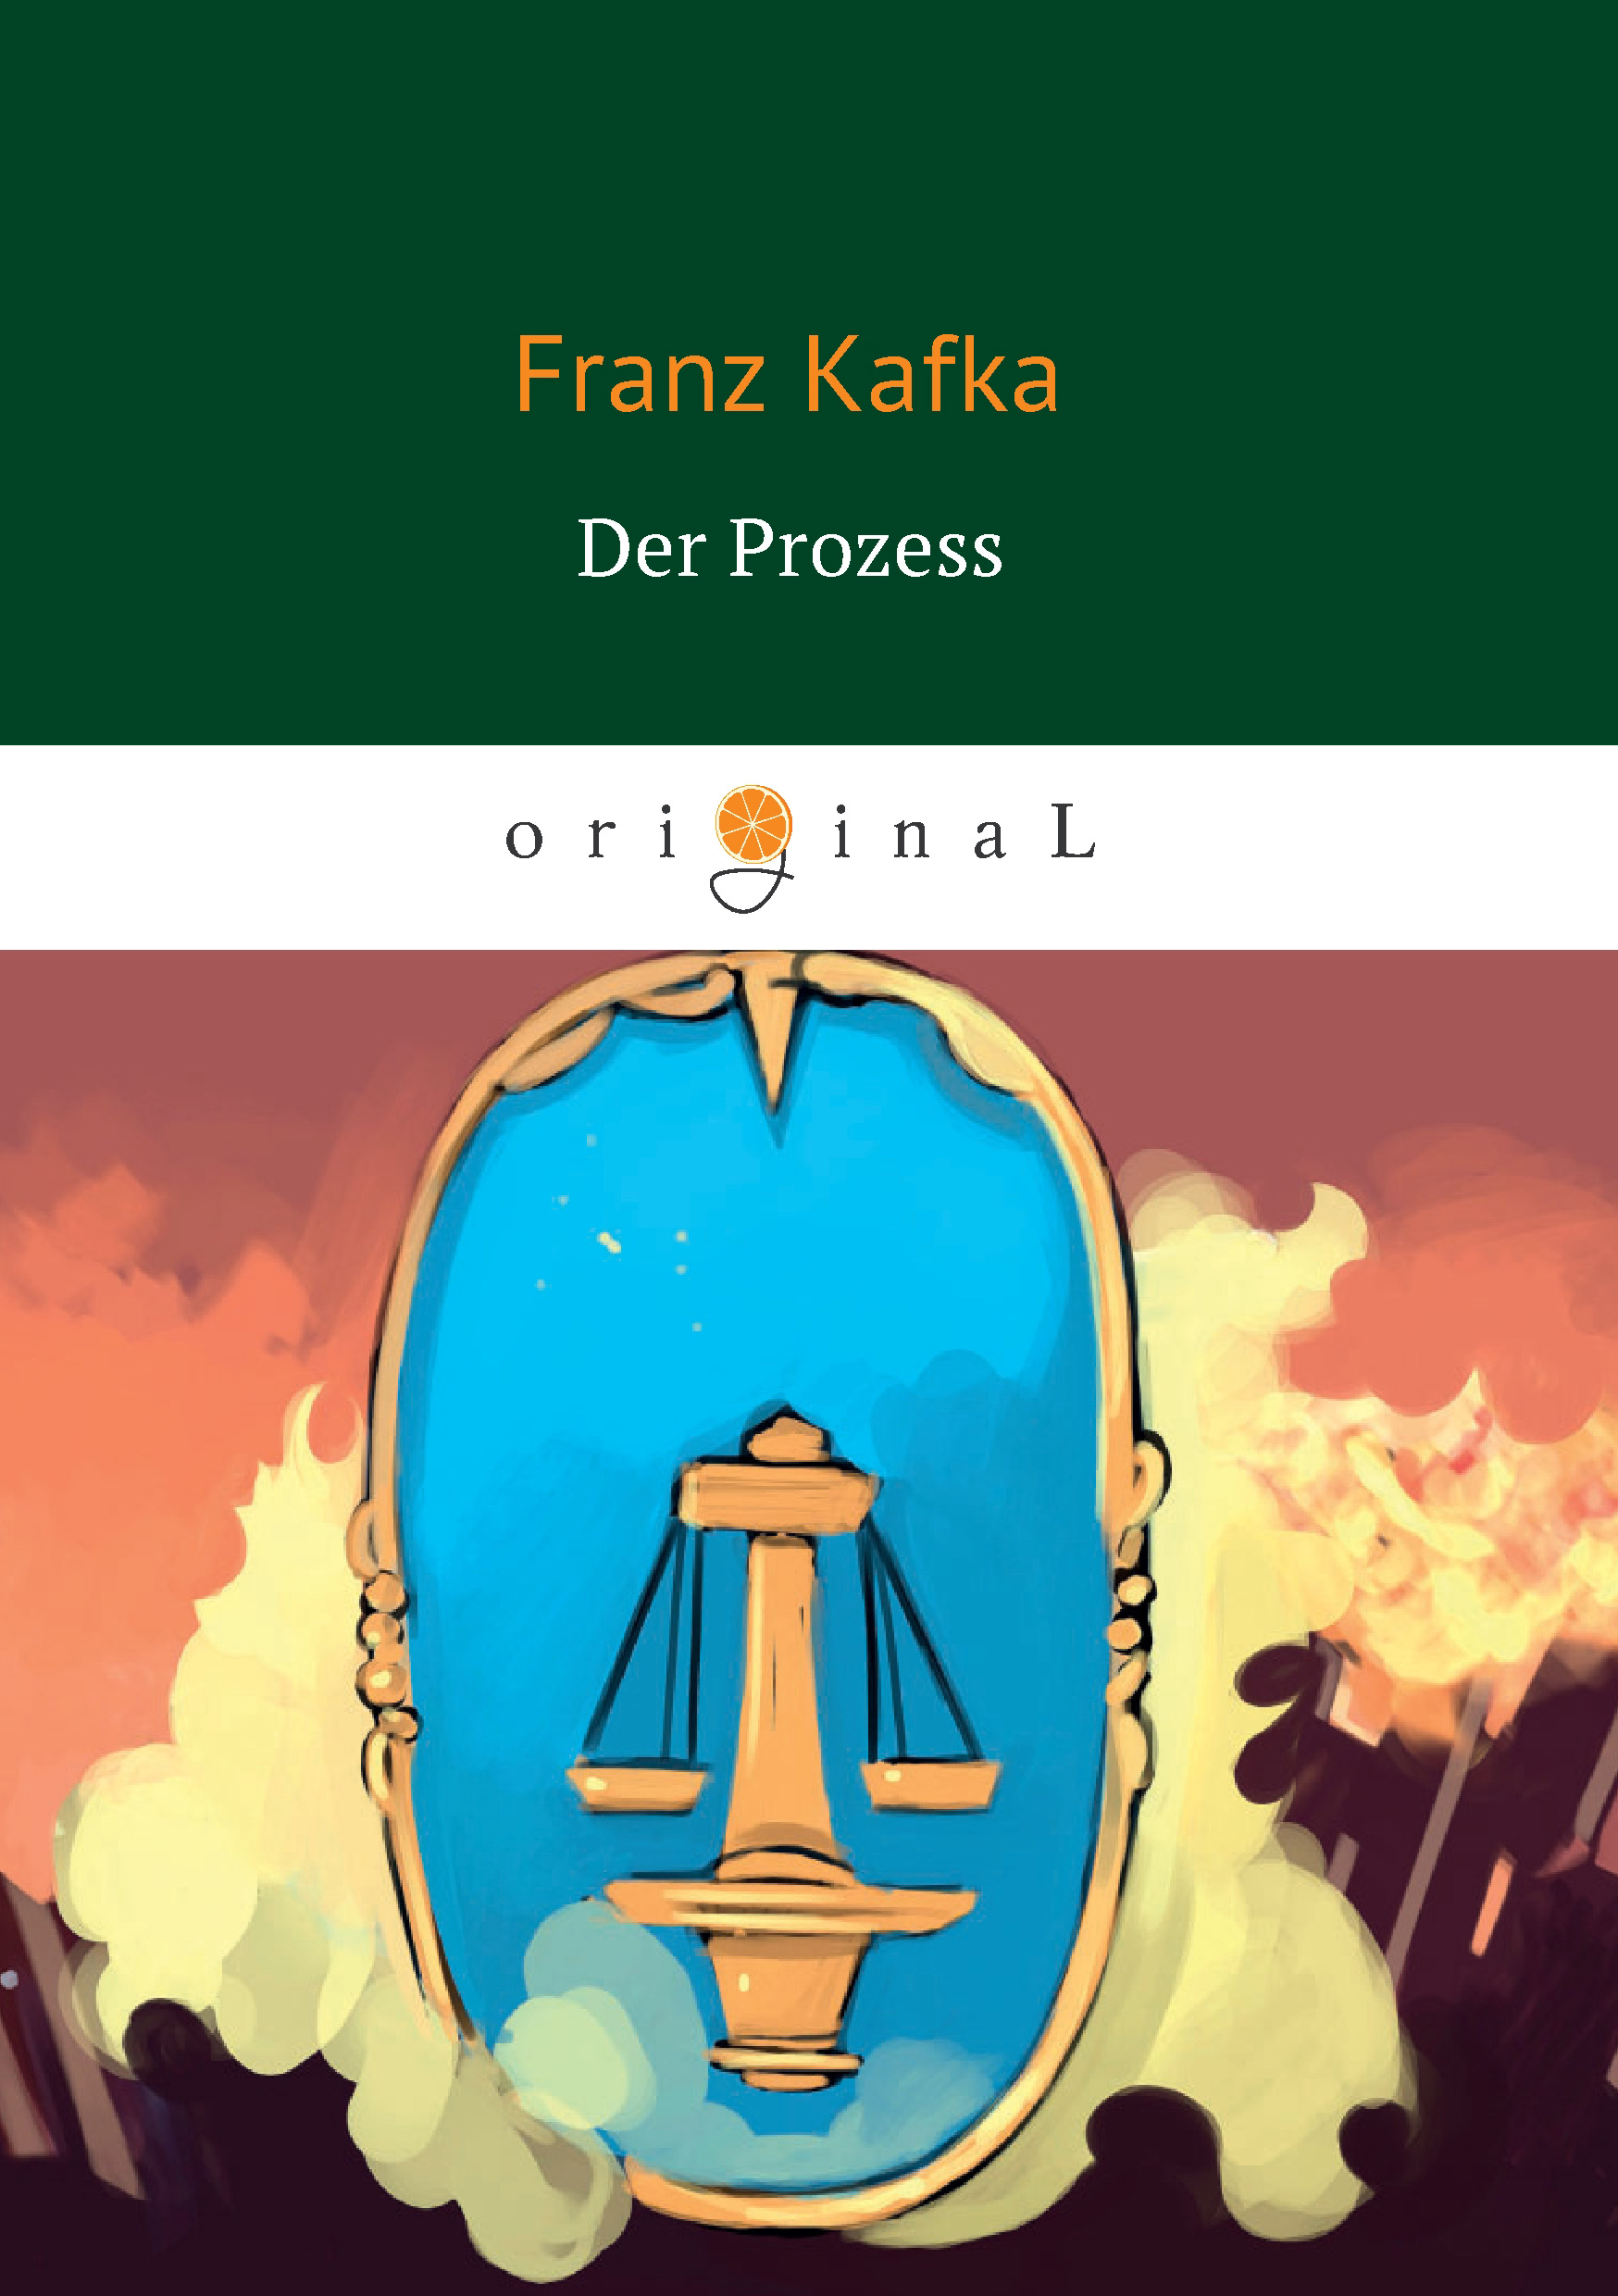 Книга Der Prozess из серии , созданная Франц Кафка, может относится к жанру Зарубежная классика, Литература 20 века. Стоимость электронной книги Der Prozess с идентификатором 147326 составляет 149.00 руб.